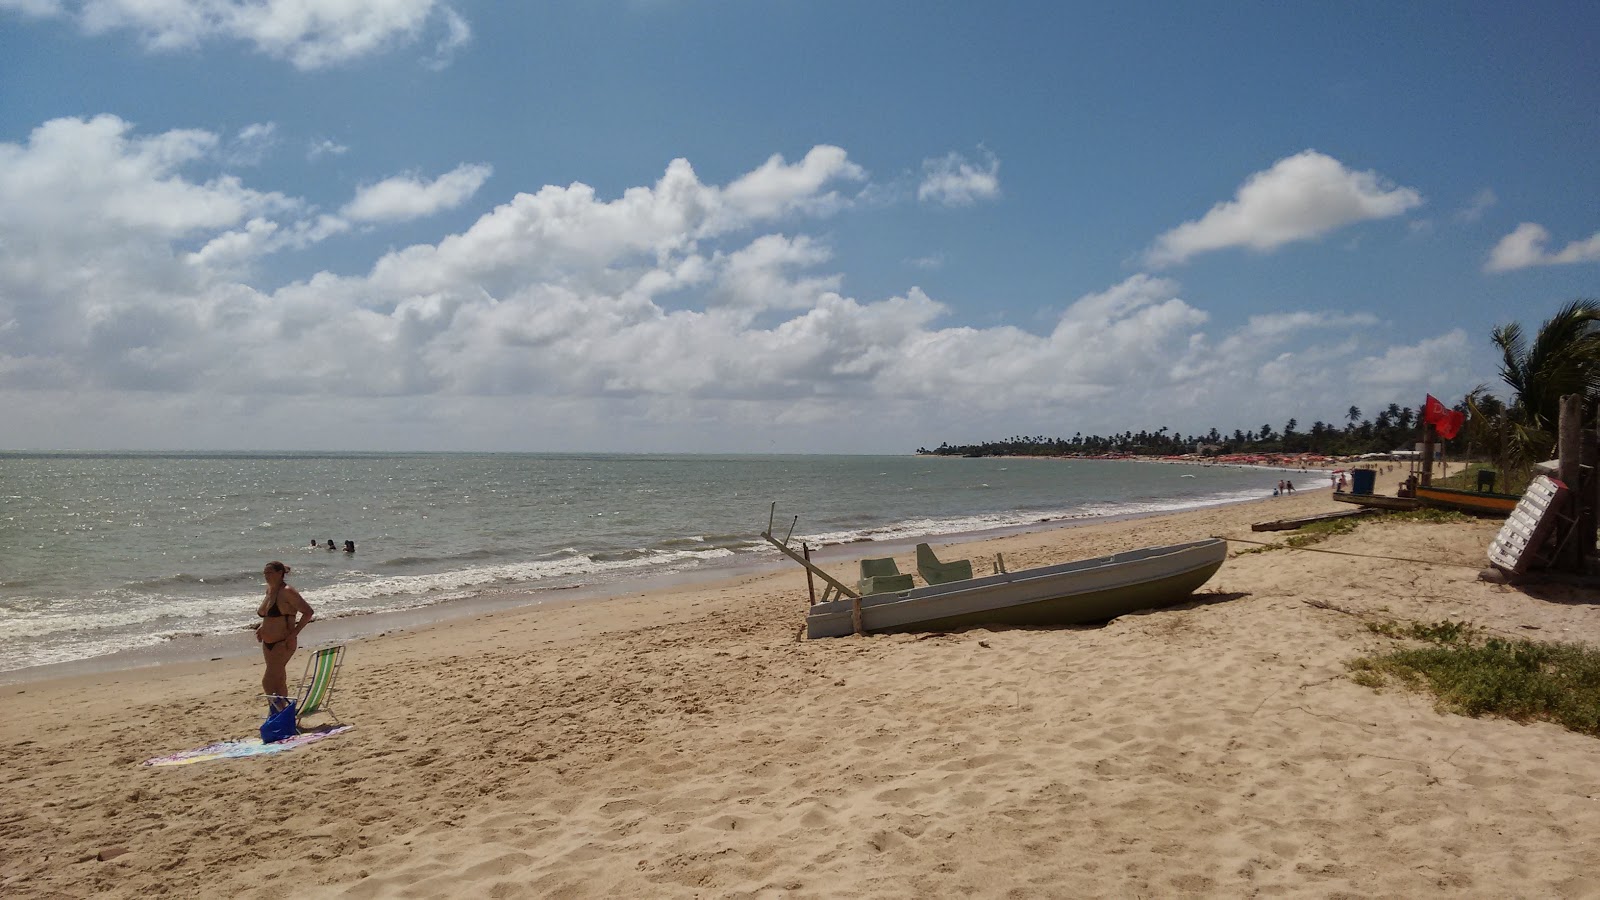 Praia da Conceicao'in fotoğrafı çok temiz temizlik seviyesi ile